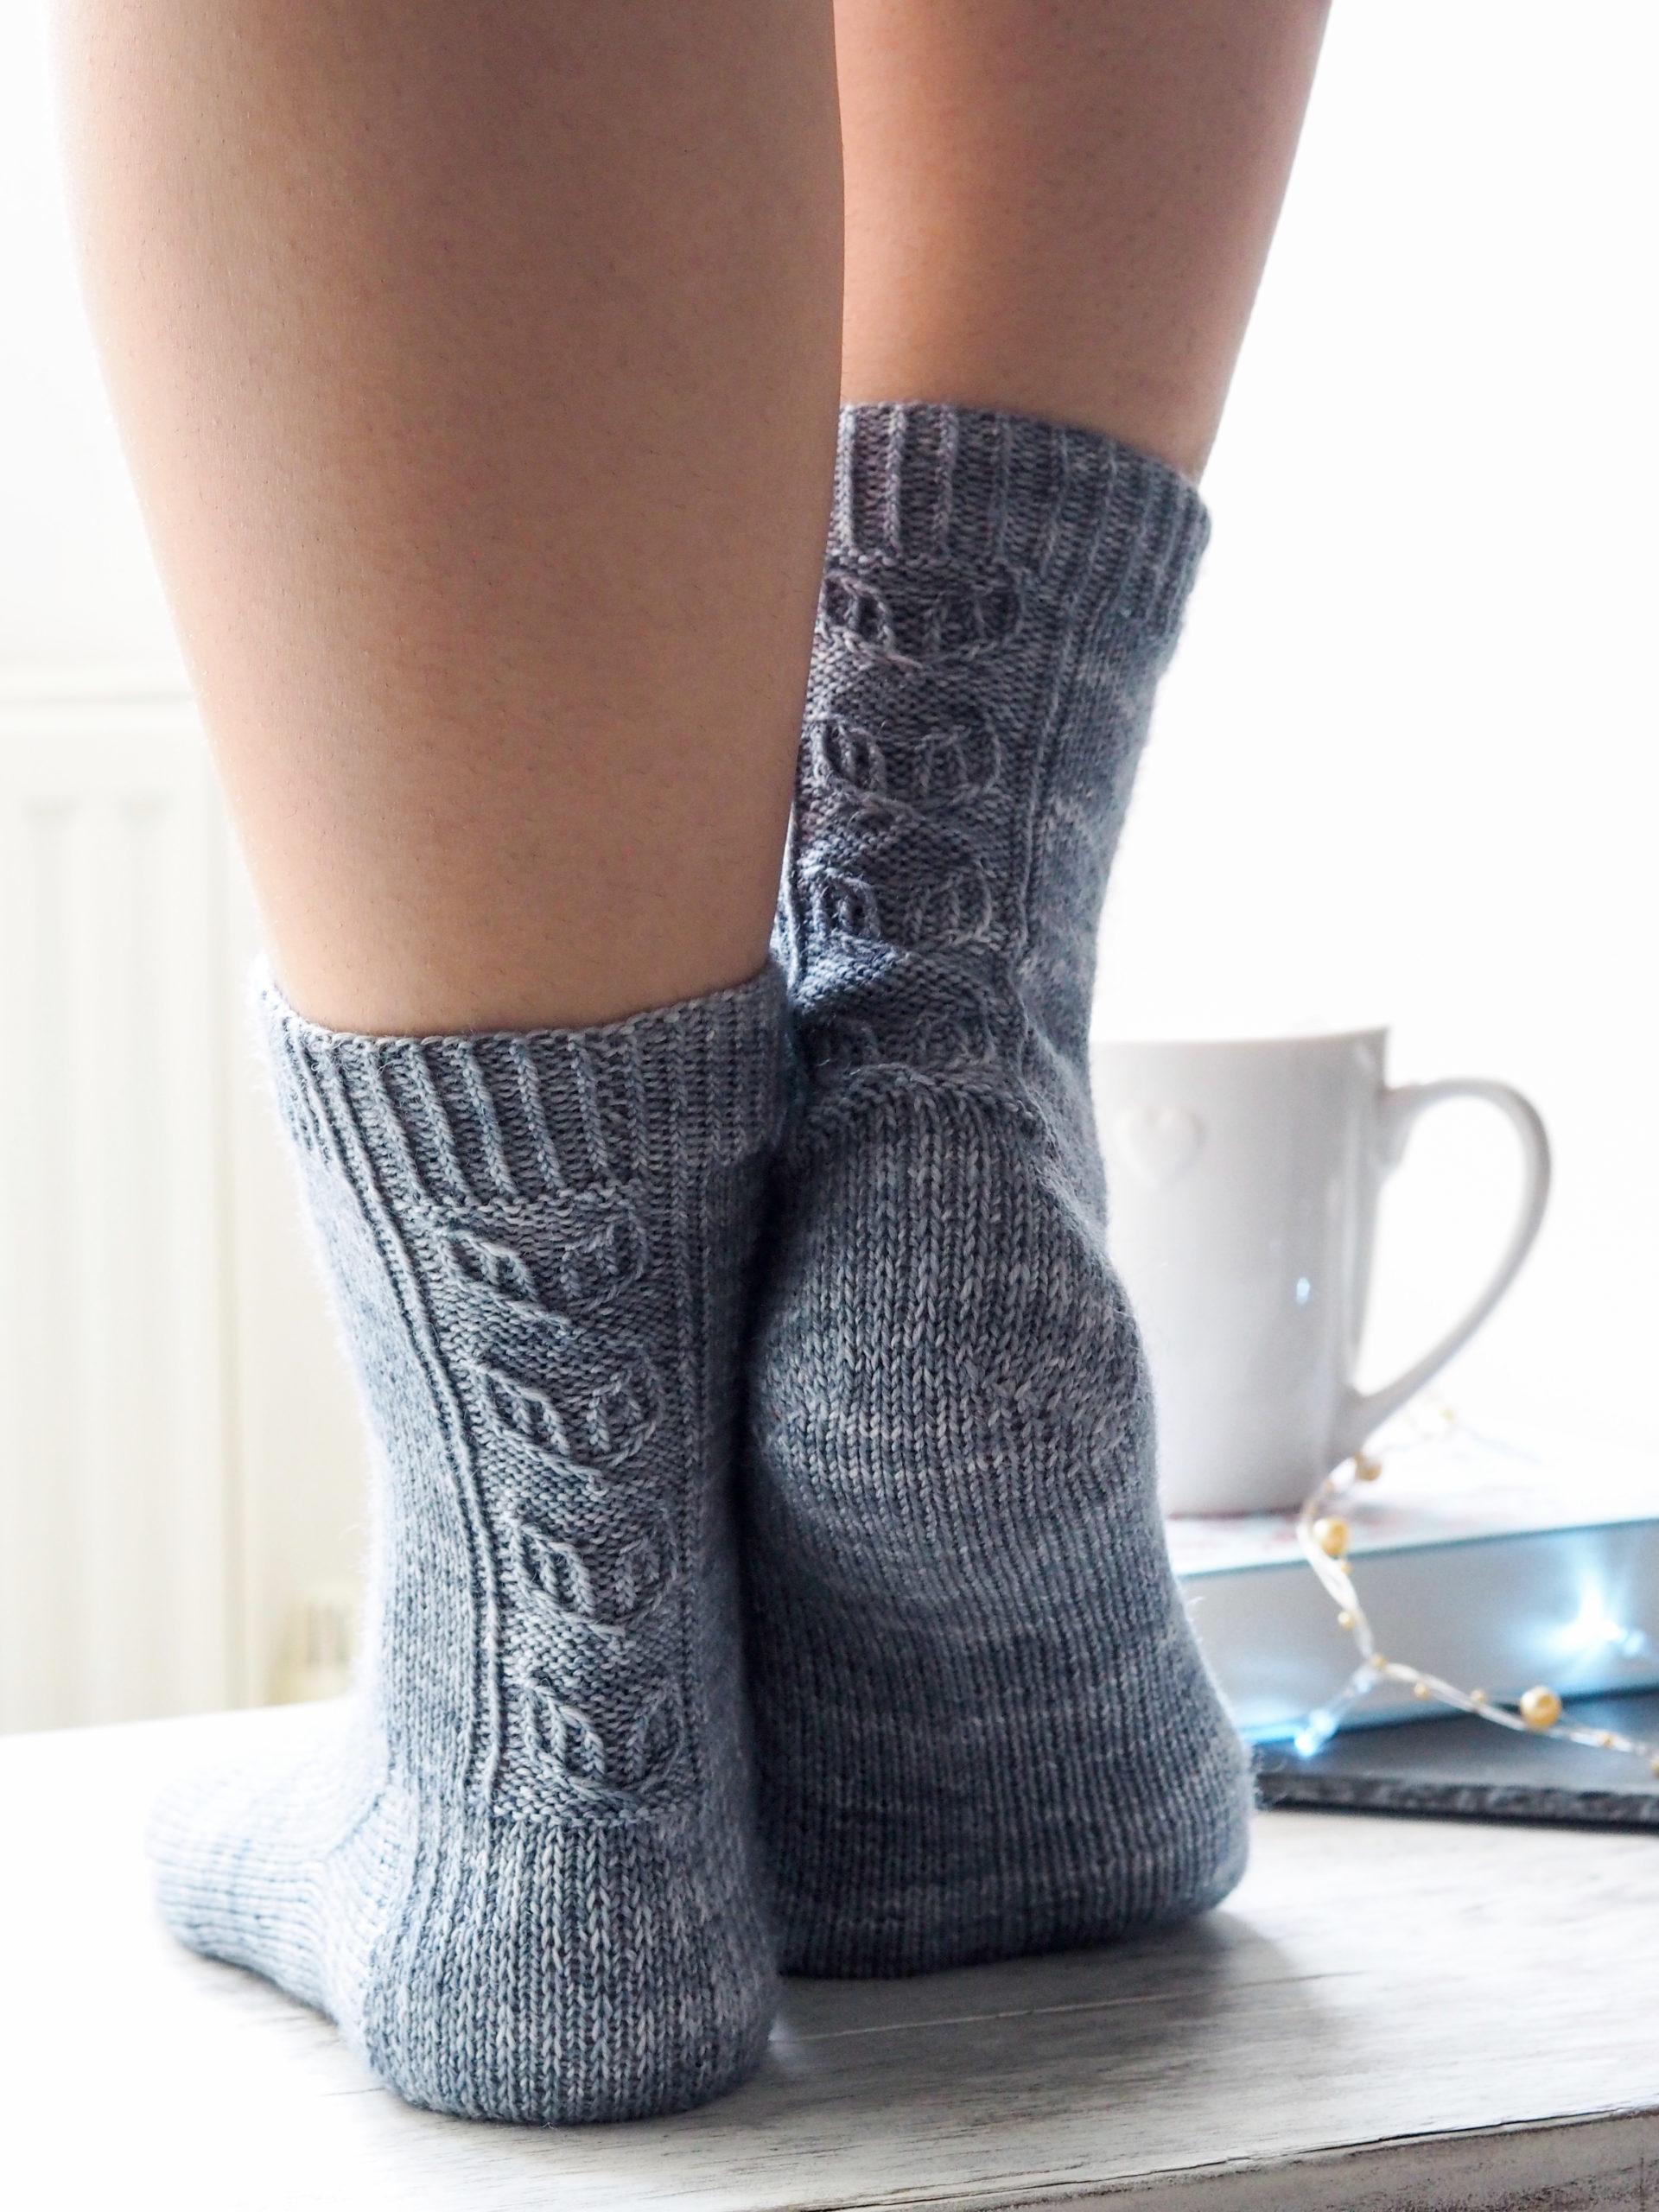 Handmade woolen socks knitting design for ladies Ankle Socks